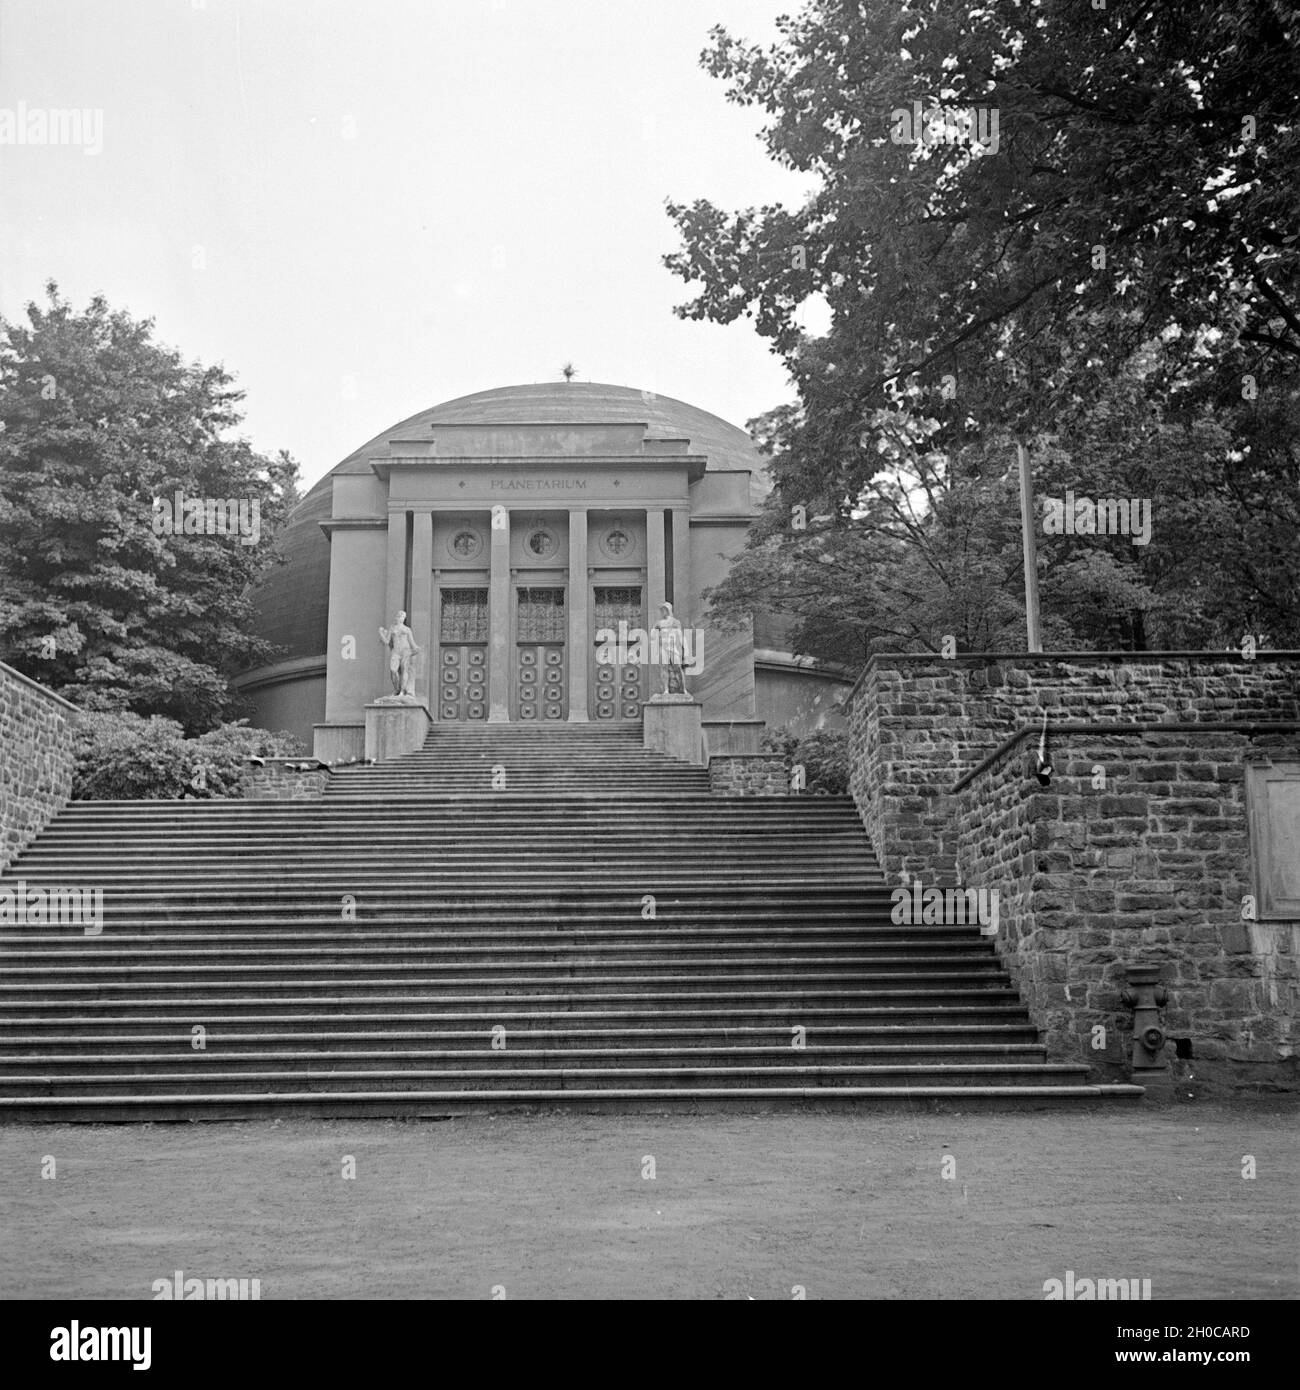 Das Planetarium in Wuppertal Barmen war das erste Planetarium weltweit, Deutschland 1930er Jahre. Il primo al mondo planetario al Barmen Wuppertal, Germania 1930s. Foto Stock